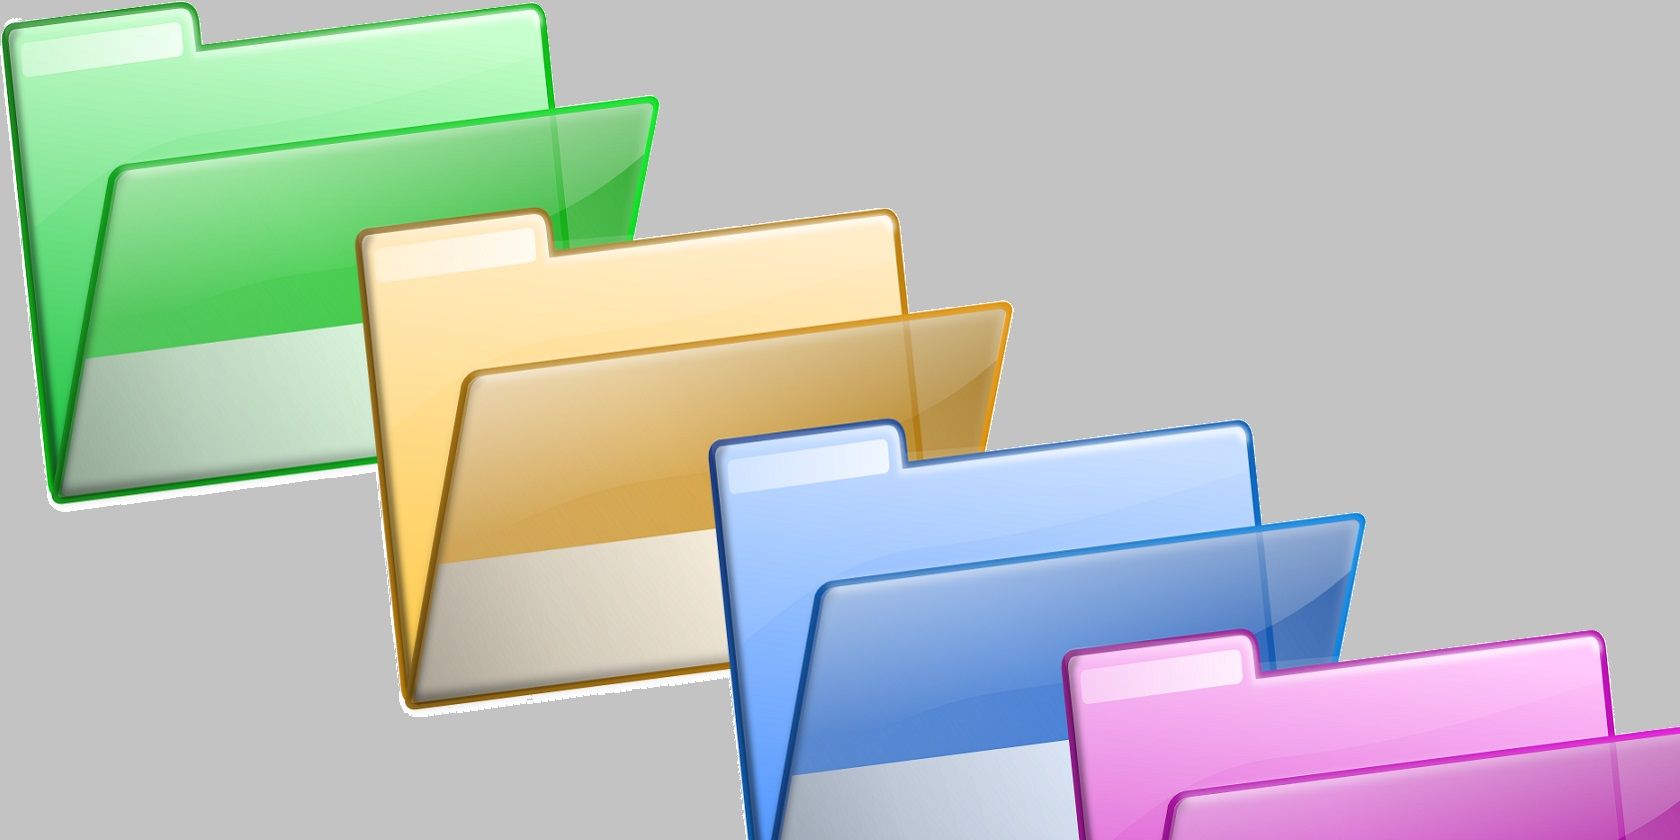 Windows folders 